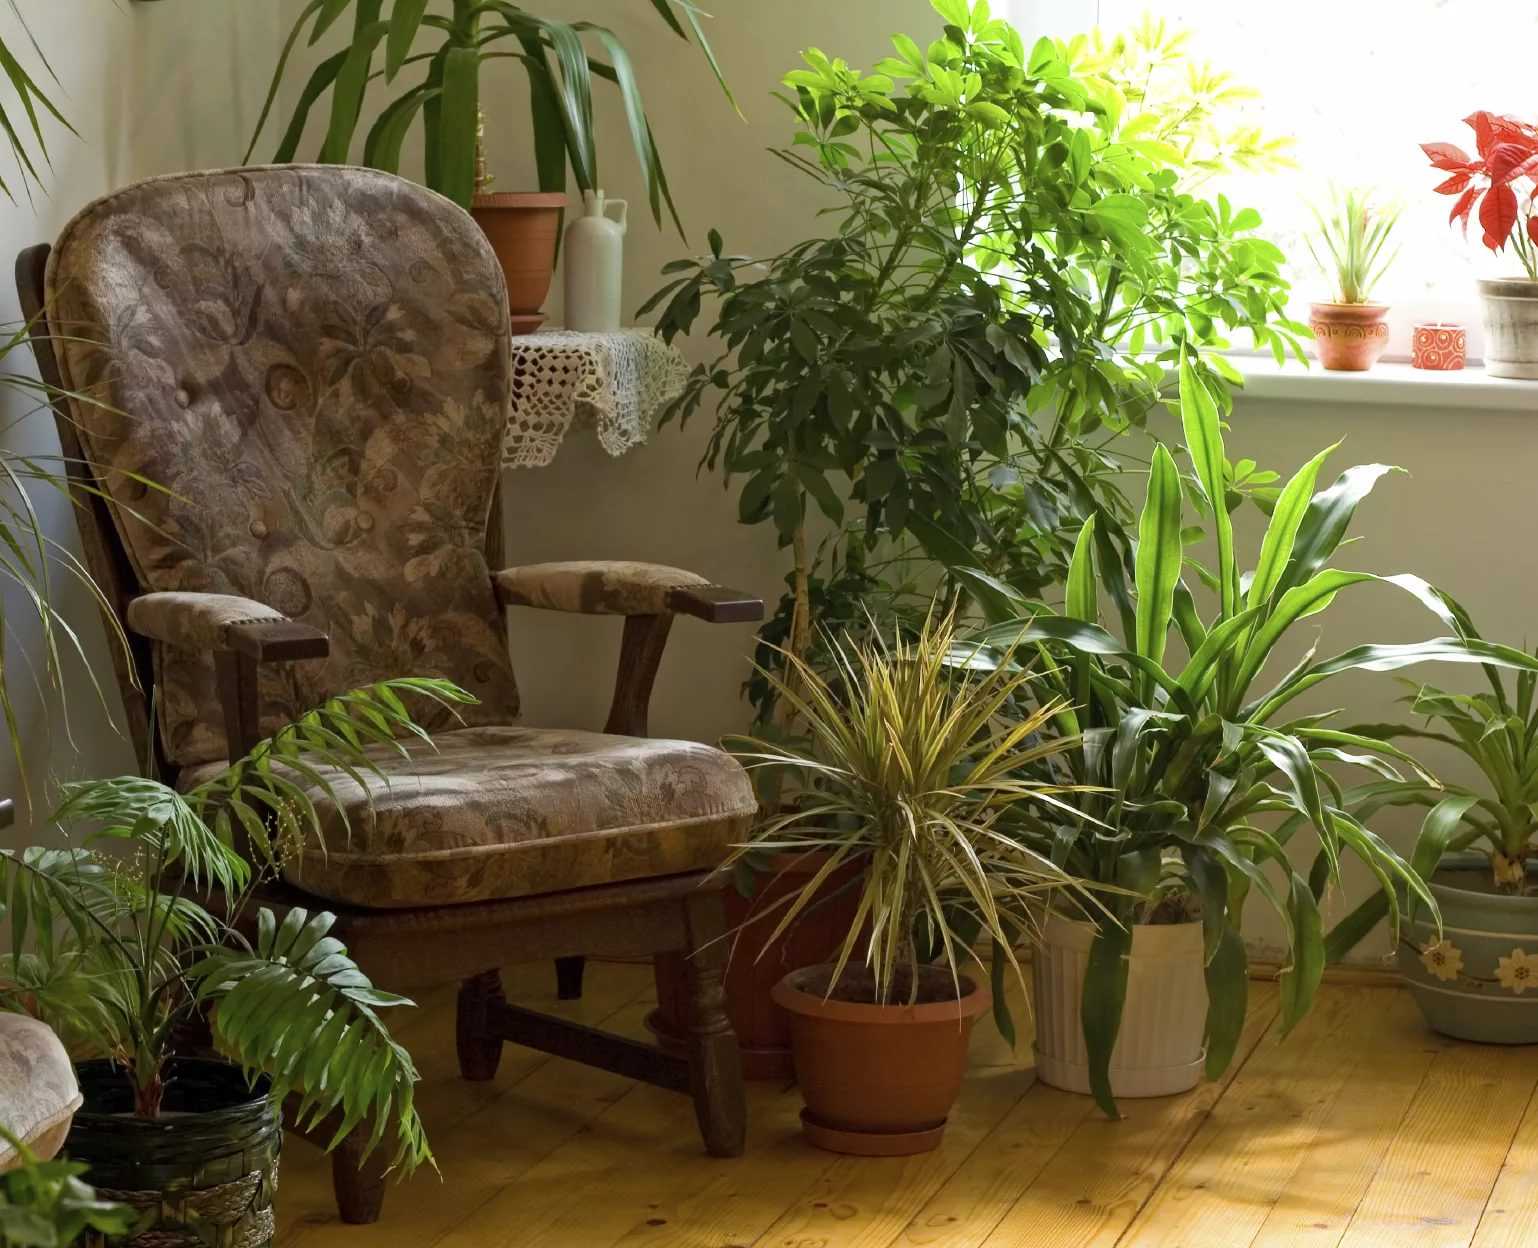 11 комнатных растений, которые должны быть в каждом доме